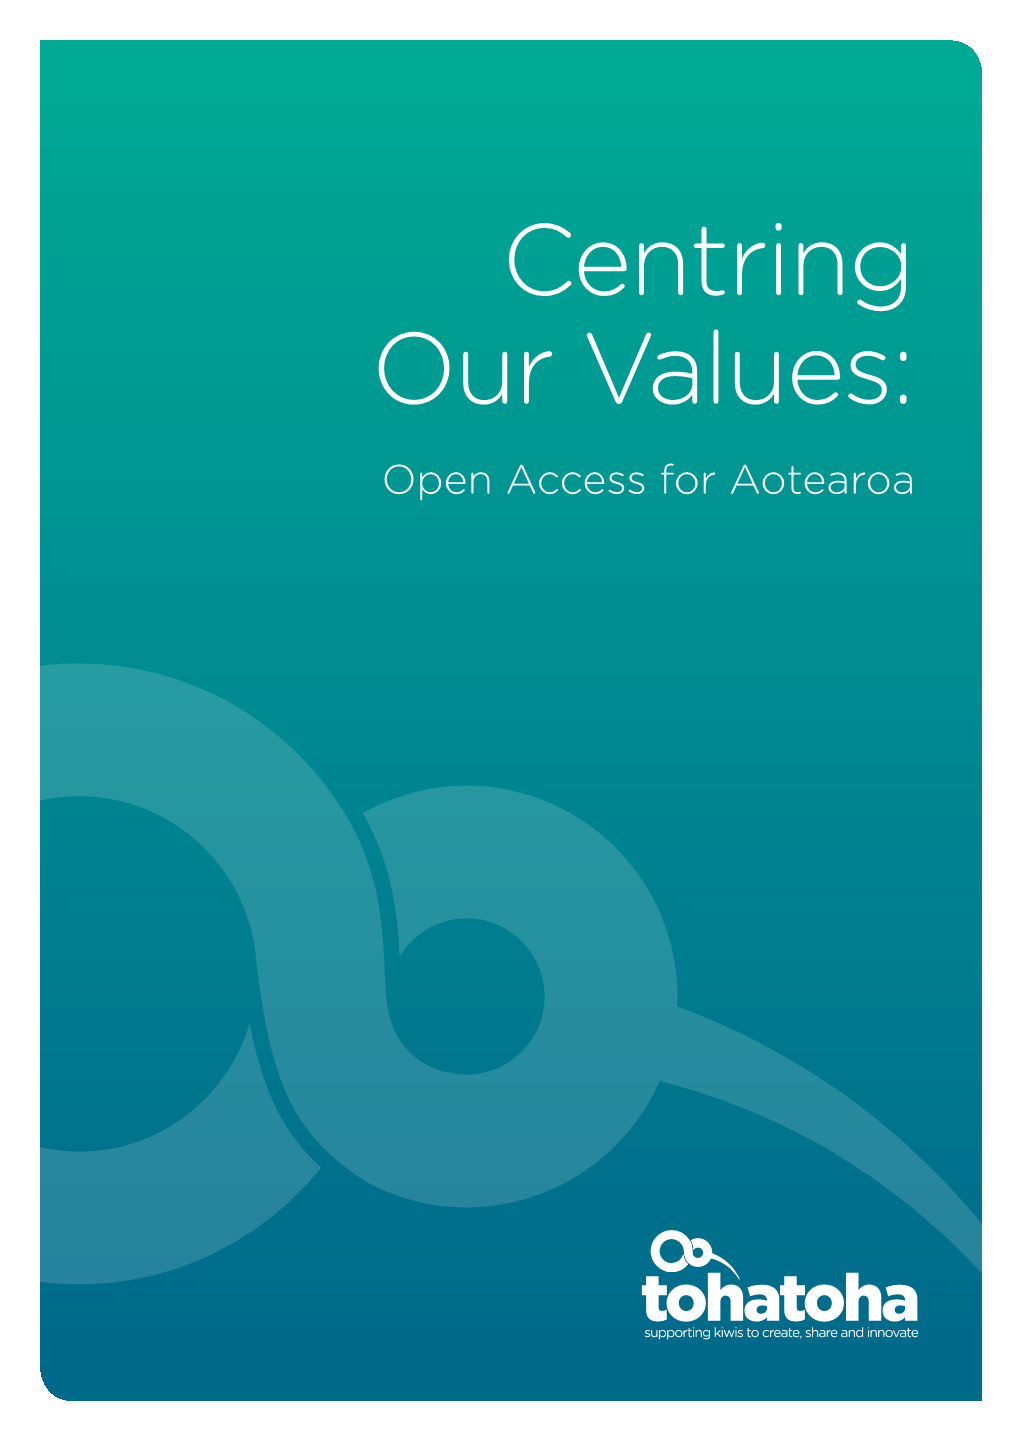 Centring Our Values: Open Access for Aotearoa